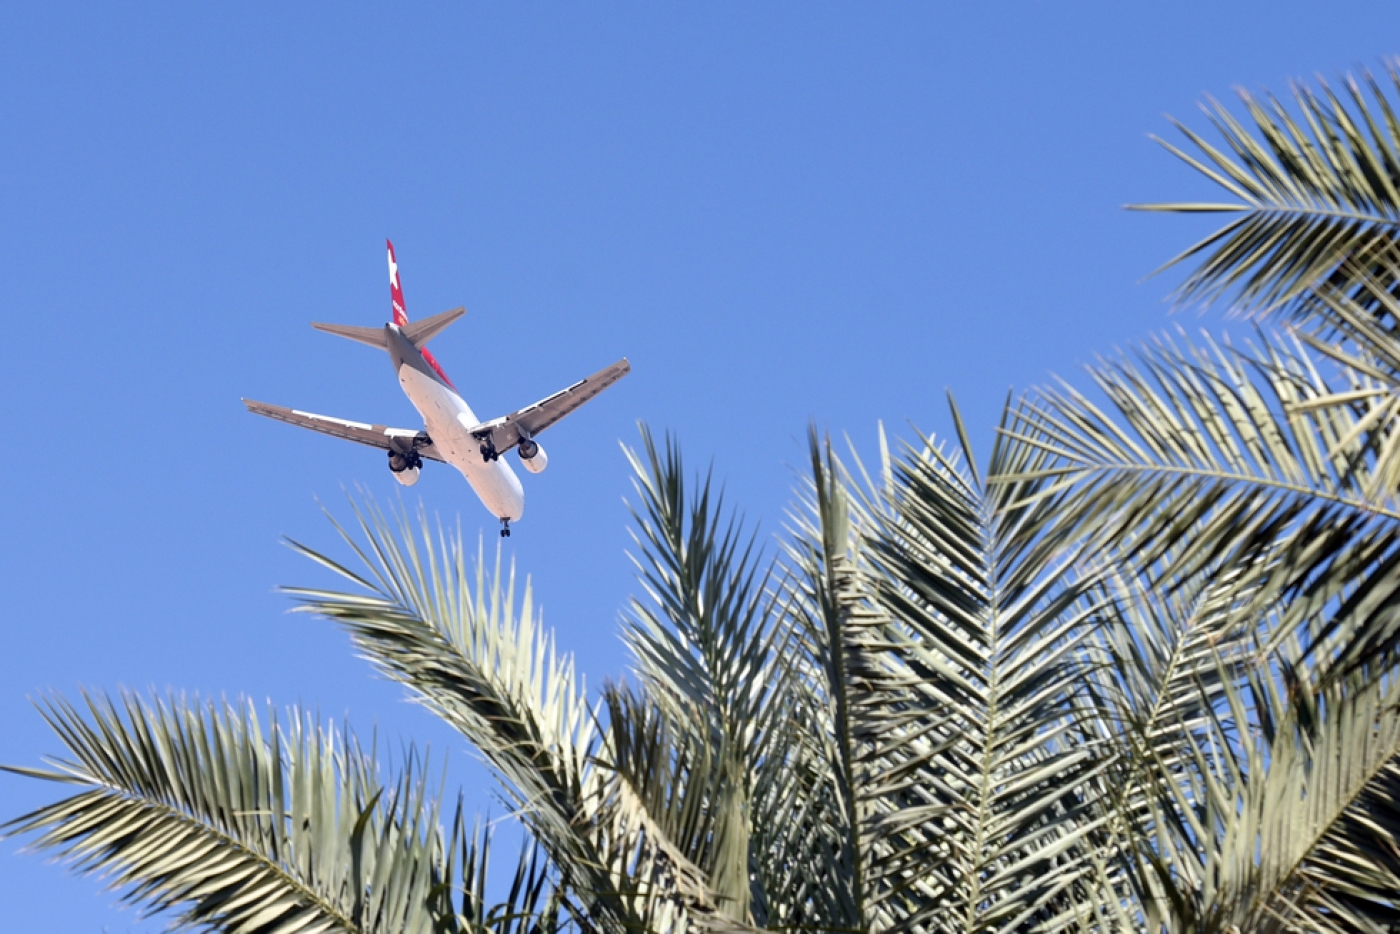 Египет летает ли россия. Полет в Египет. Самолеты которые летают на шарма Шейх. Фото самолетов летающих в Египет. Лечу в Египет фото самолета.